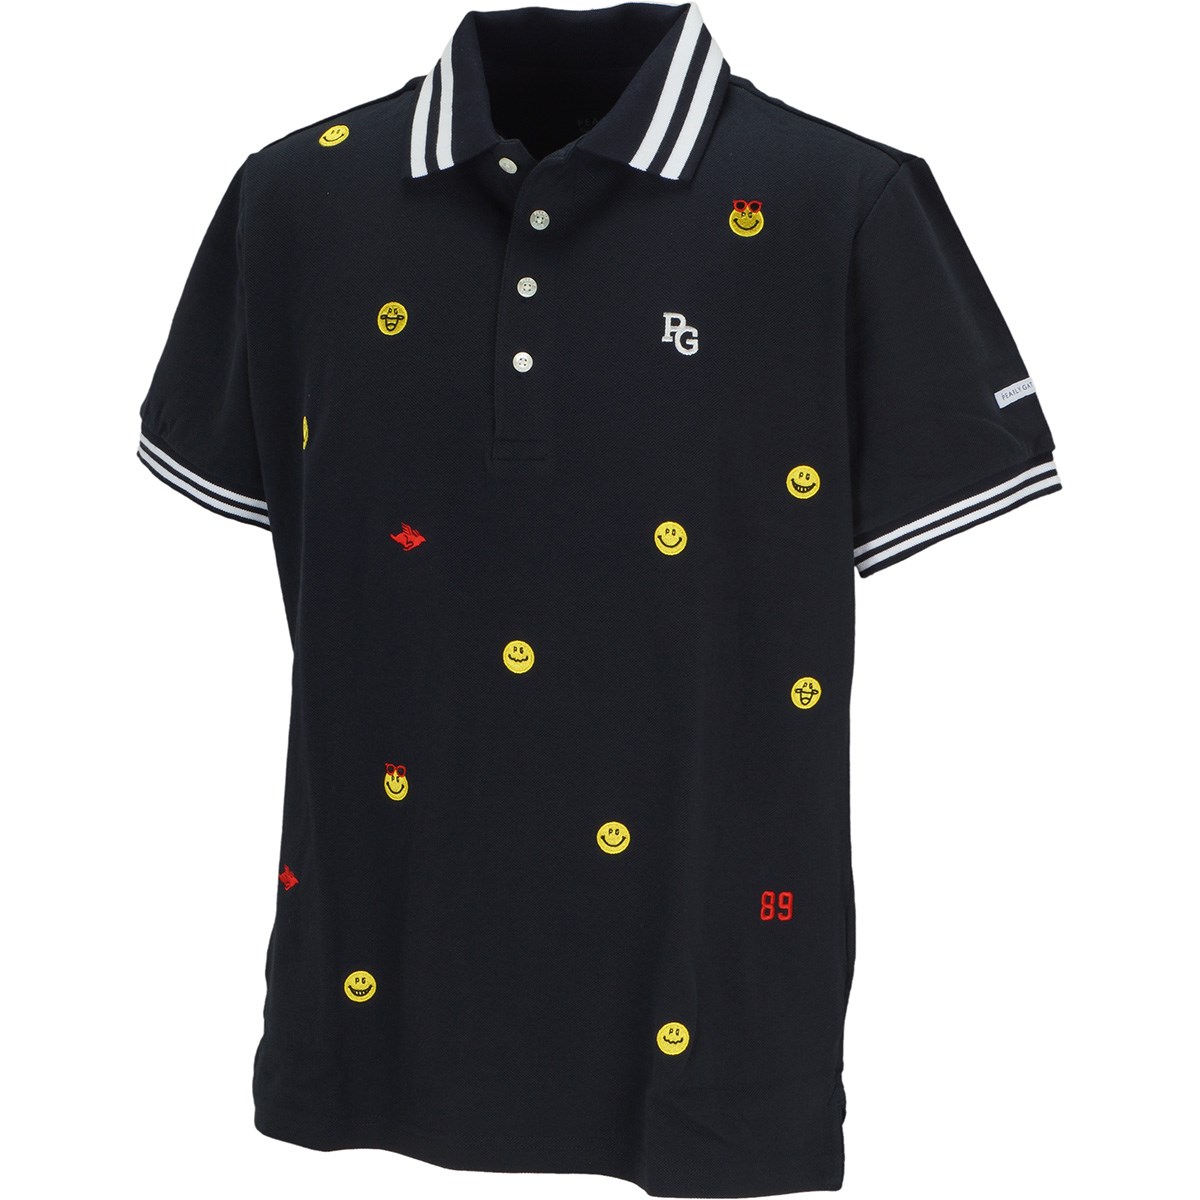 「パーリーゲイツ 鹿の子半袖ポロシャツ 」（ポロシャツ・シャツ）- ゴルフ(GOLF)用品のネット通販